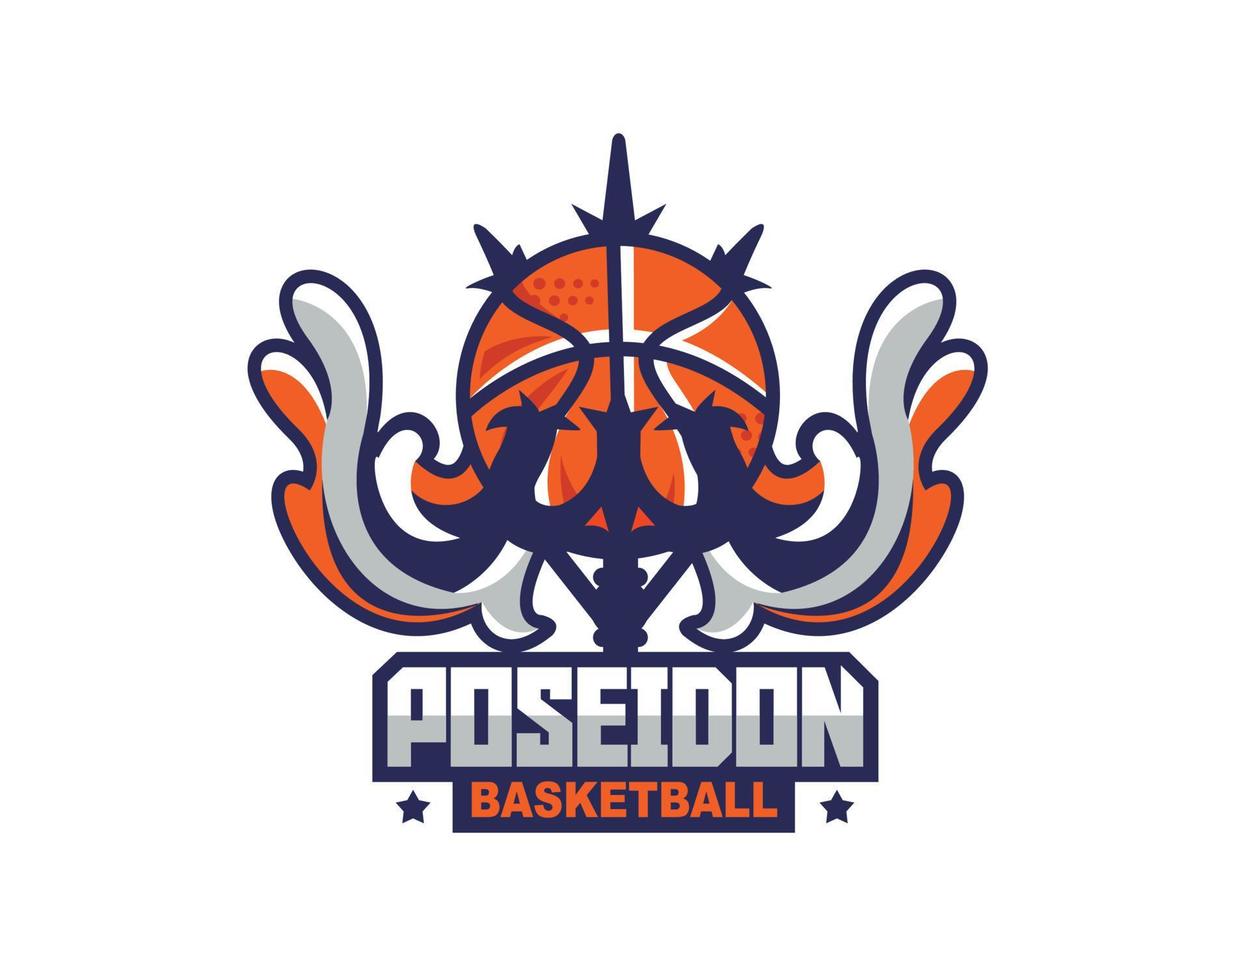 logo de ballon de basket-ball de bouclier minimalis pour les équipes et les événements vecteur